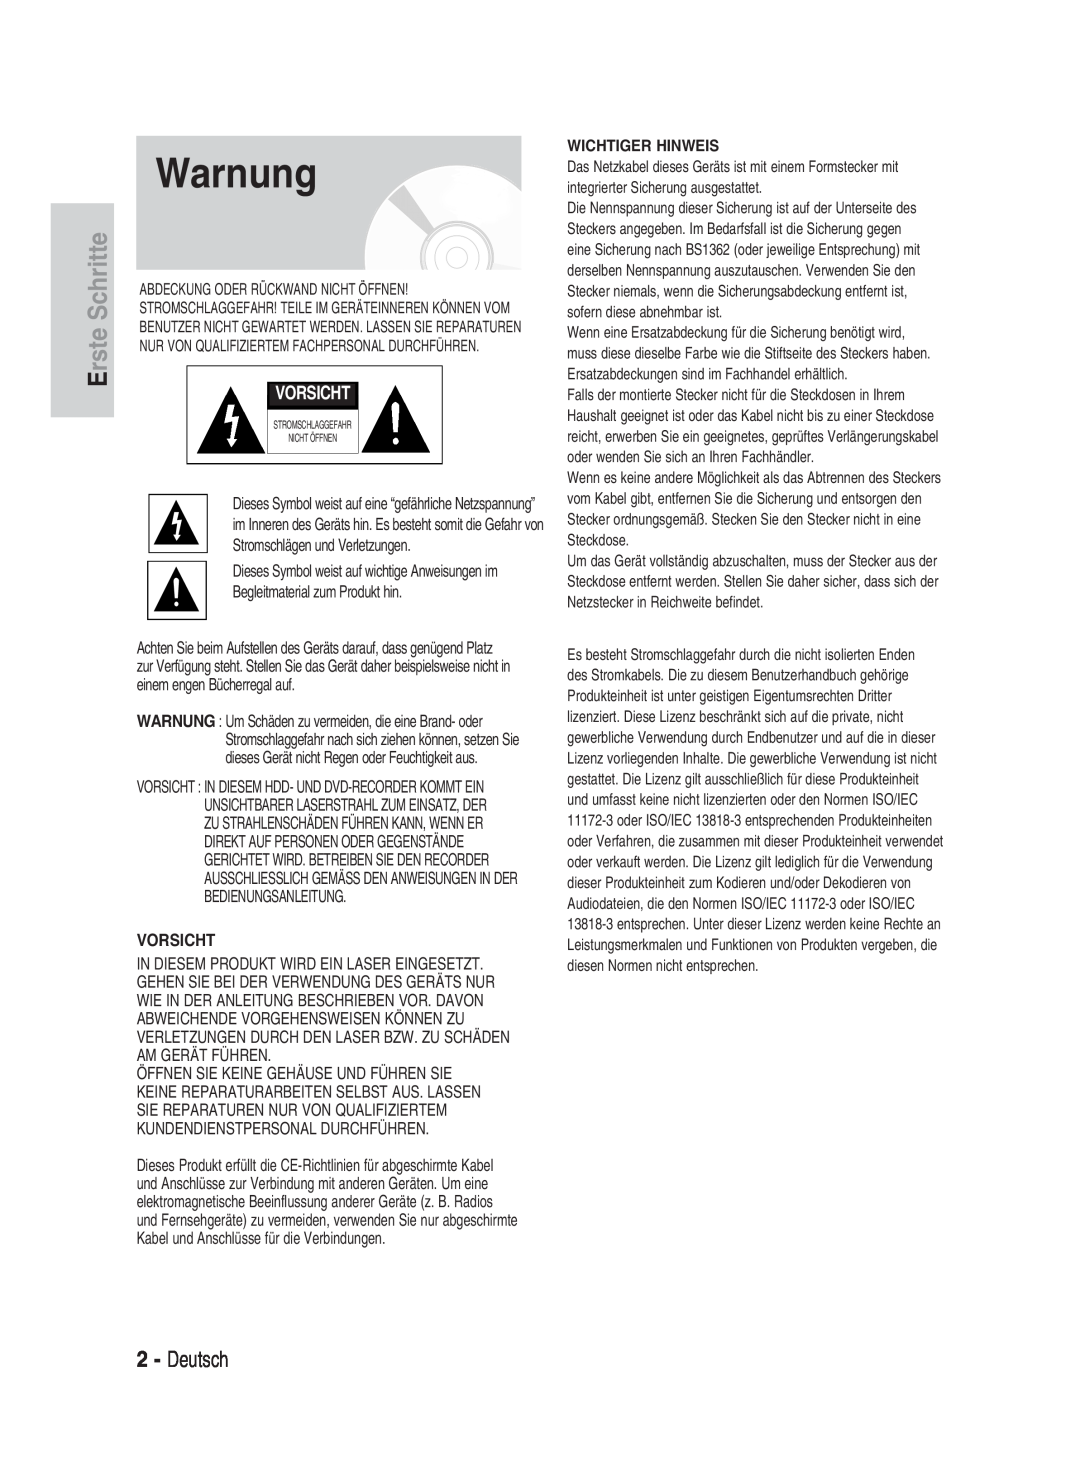 Samsung DVD-HR734/XEG, DVD-HR730/XEC, DVD-HR730/XEB manual Warnung, Erste Schritte, Deutsch, Vorsicht, Wichtiger Hinweis 